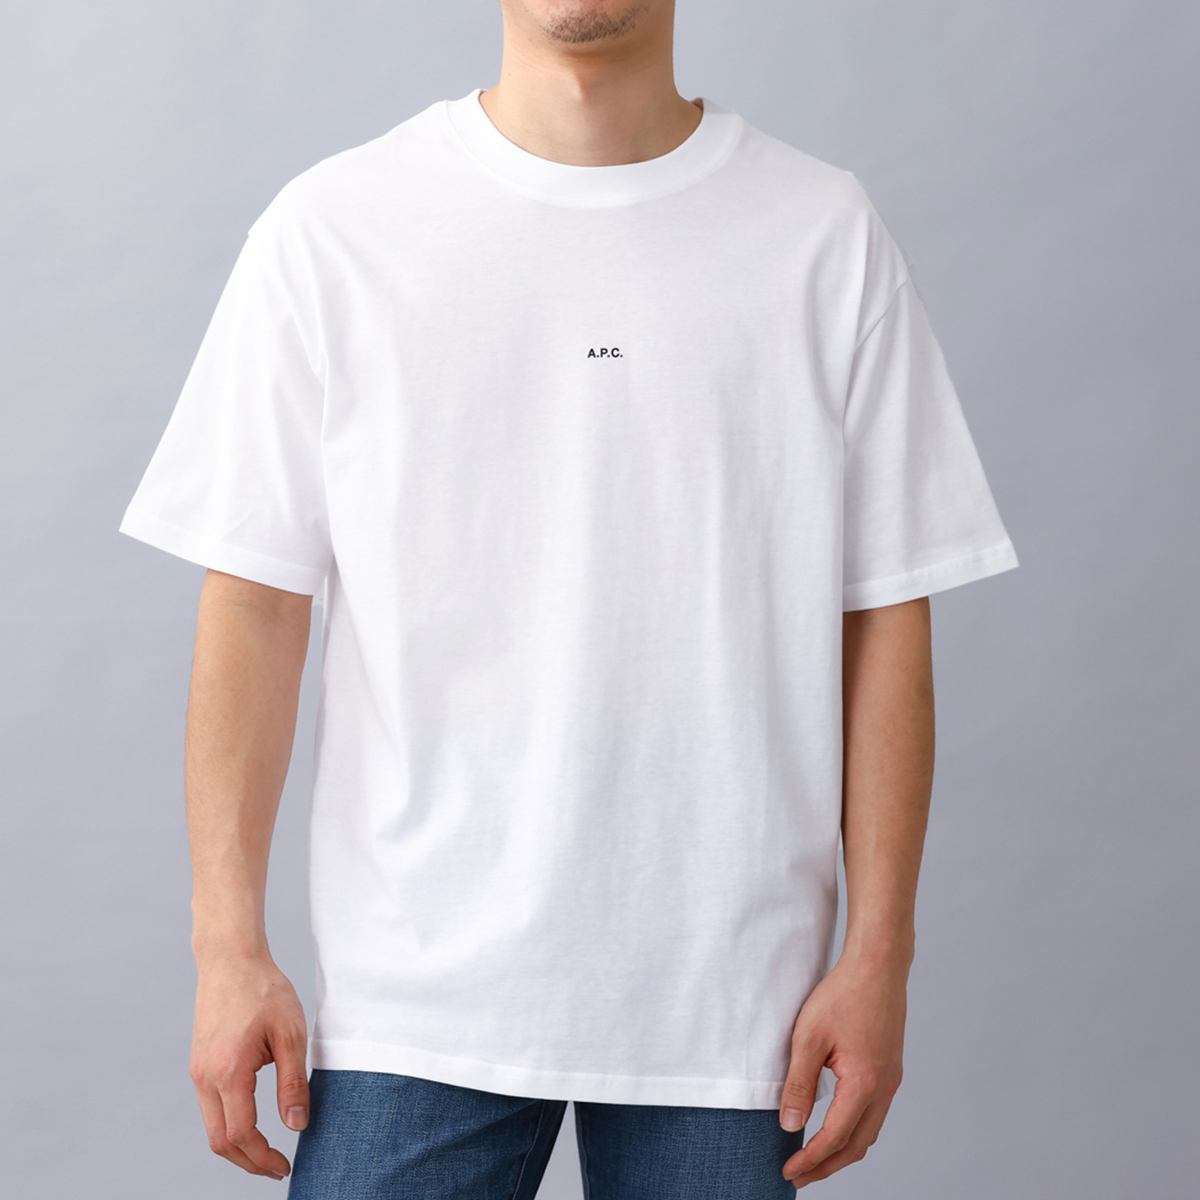 アーペーセー A.P.C. メンズTシャツ Tシャツ コットン ロゴ クルーネック ホワイト H26...